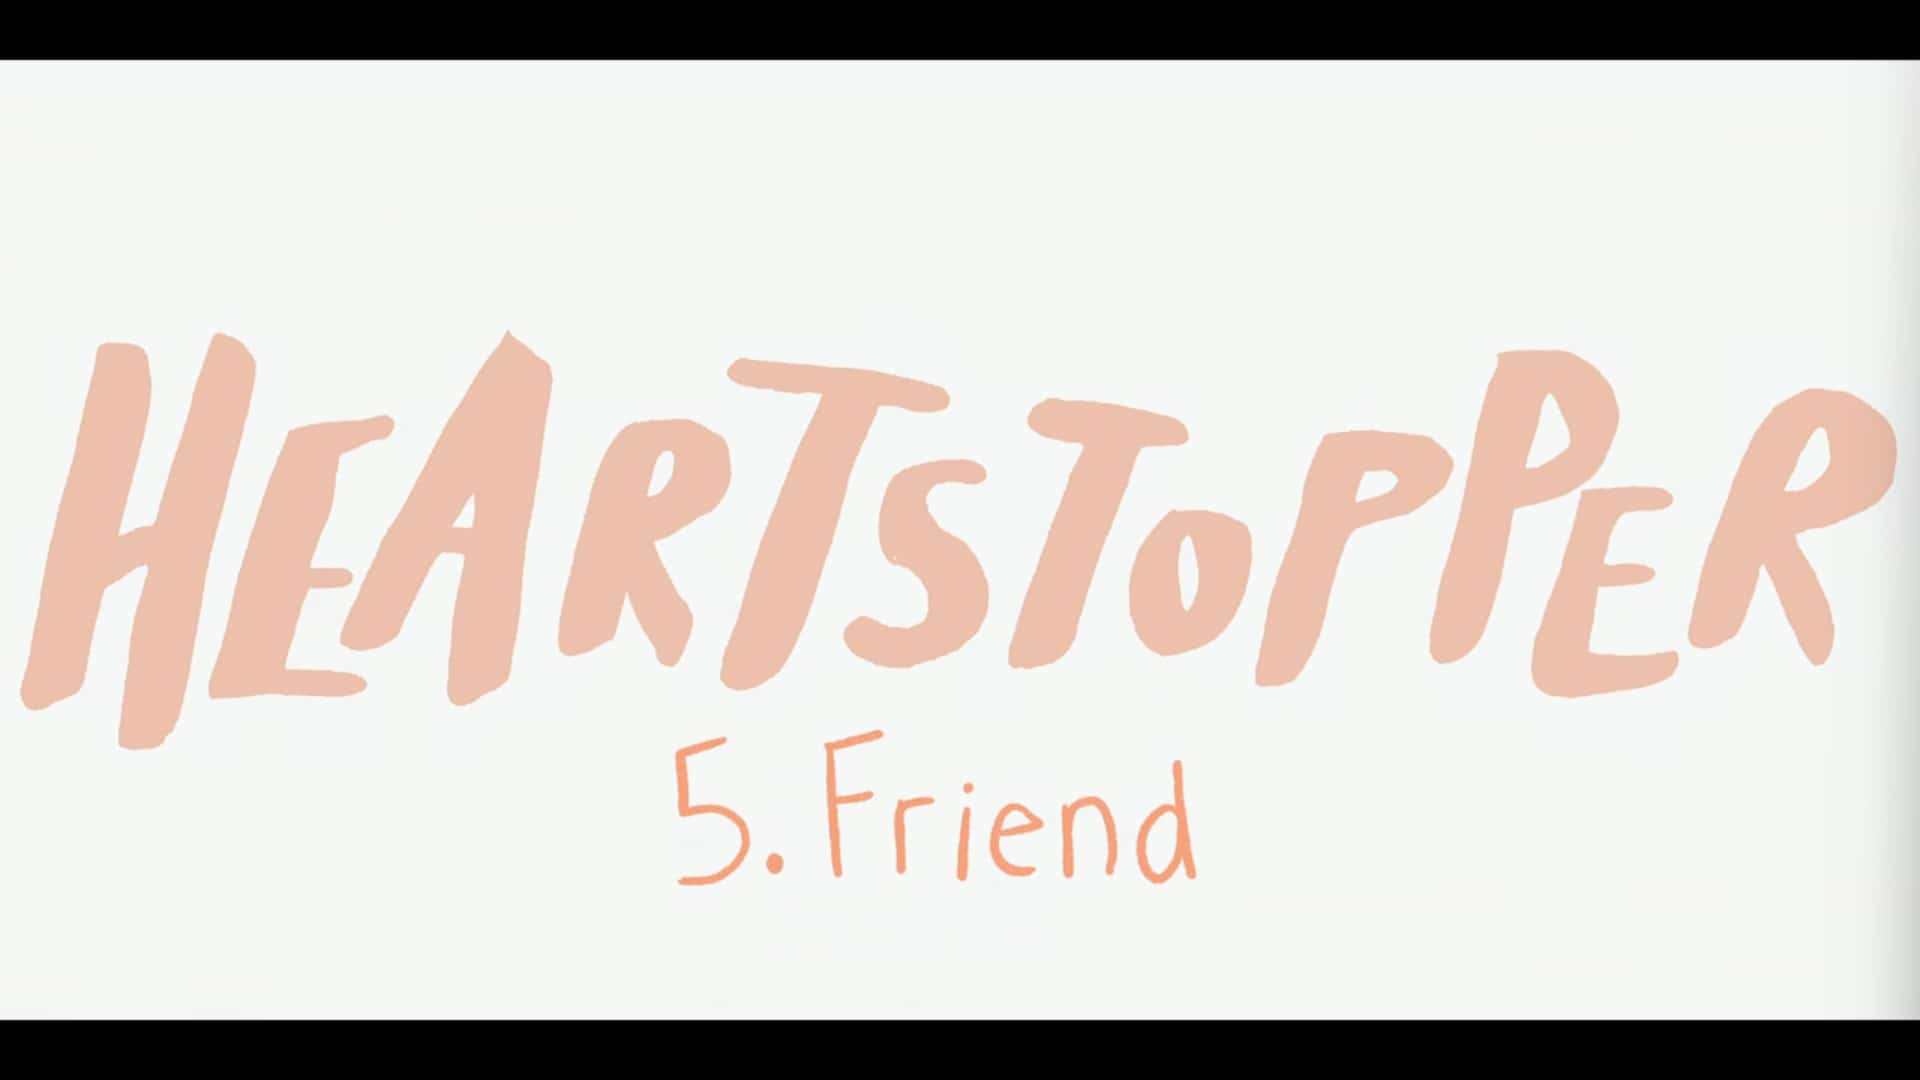 Title Card - Heartstopper Season 1 Episode 5 Friend